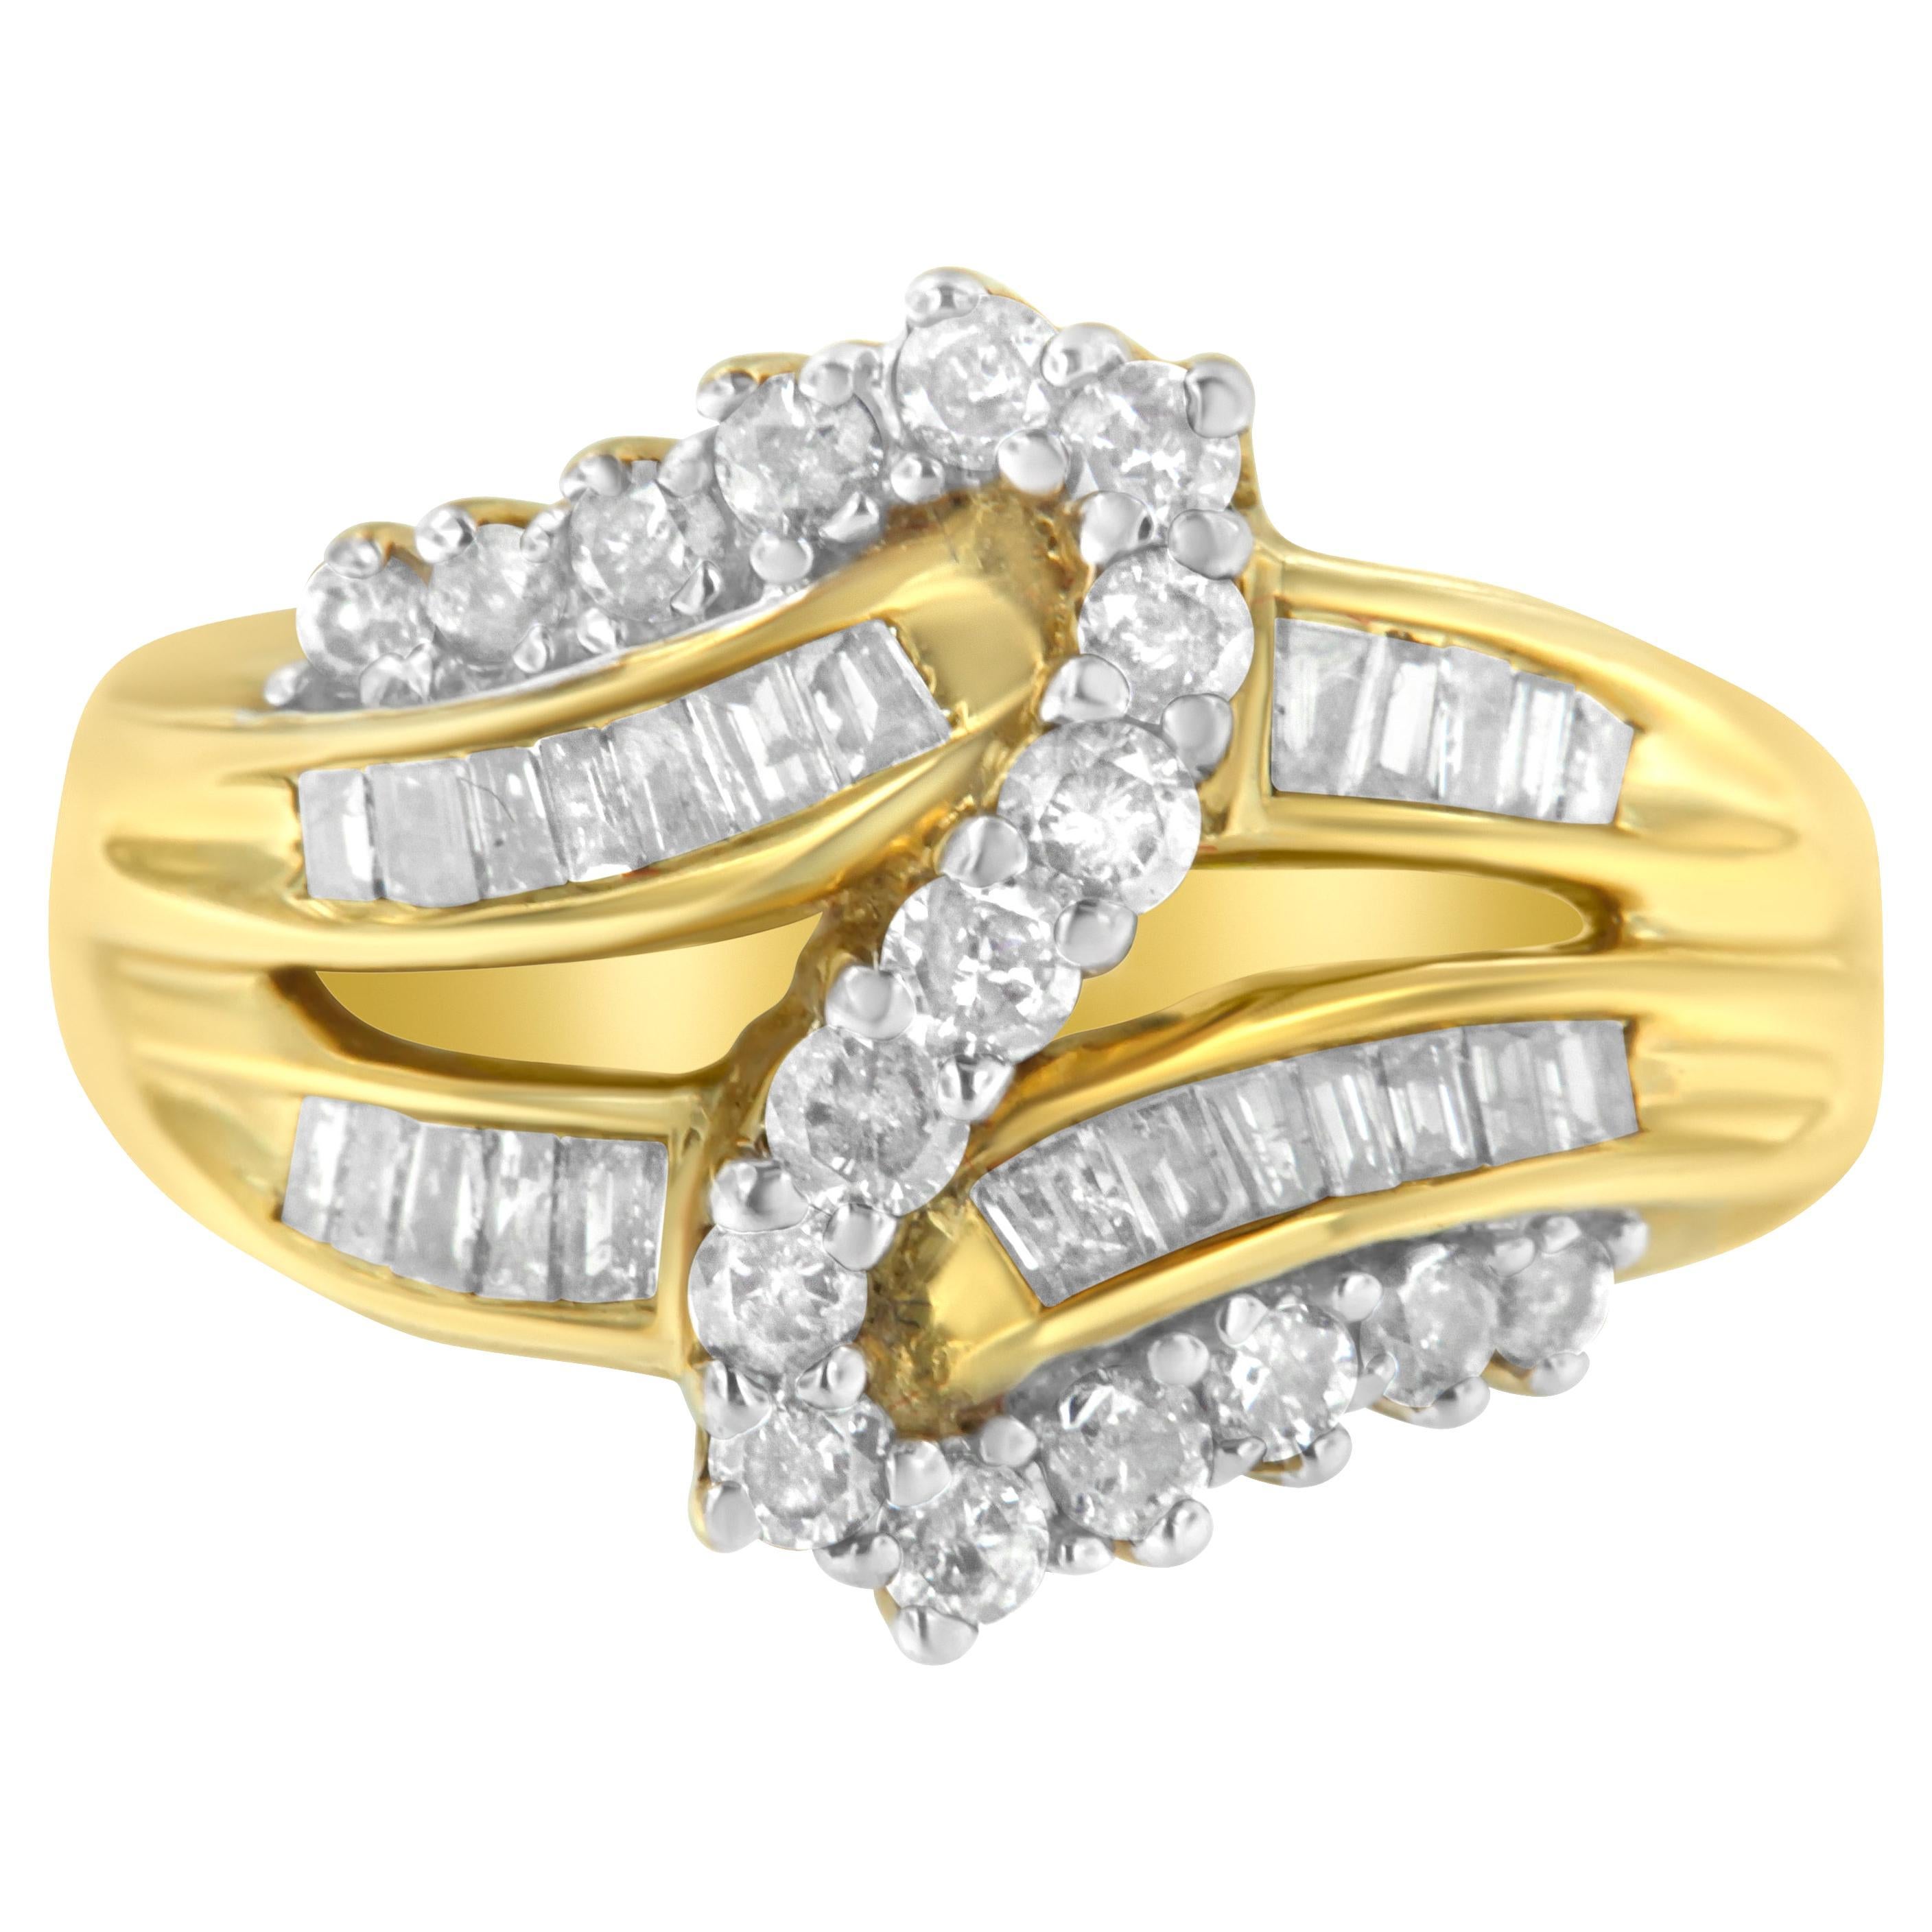 Bague bypass en or jaune 10 carats avec diamants taille ronde et baguette de 1,0 carat